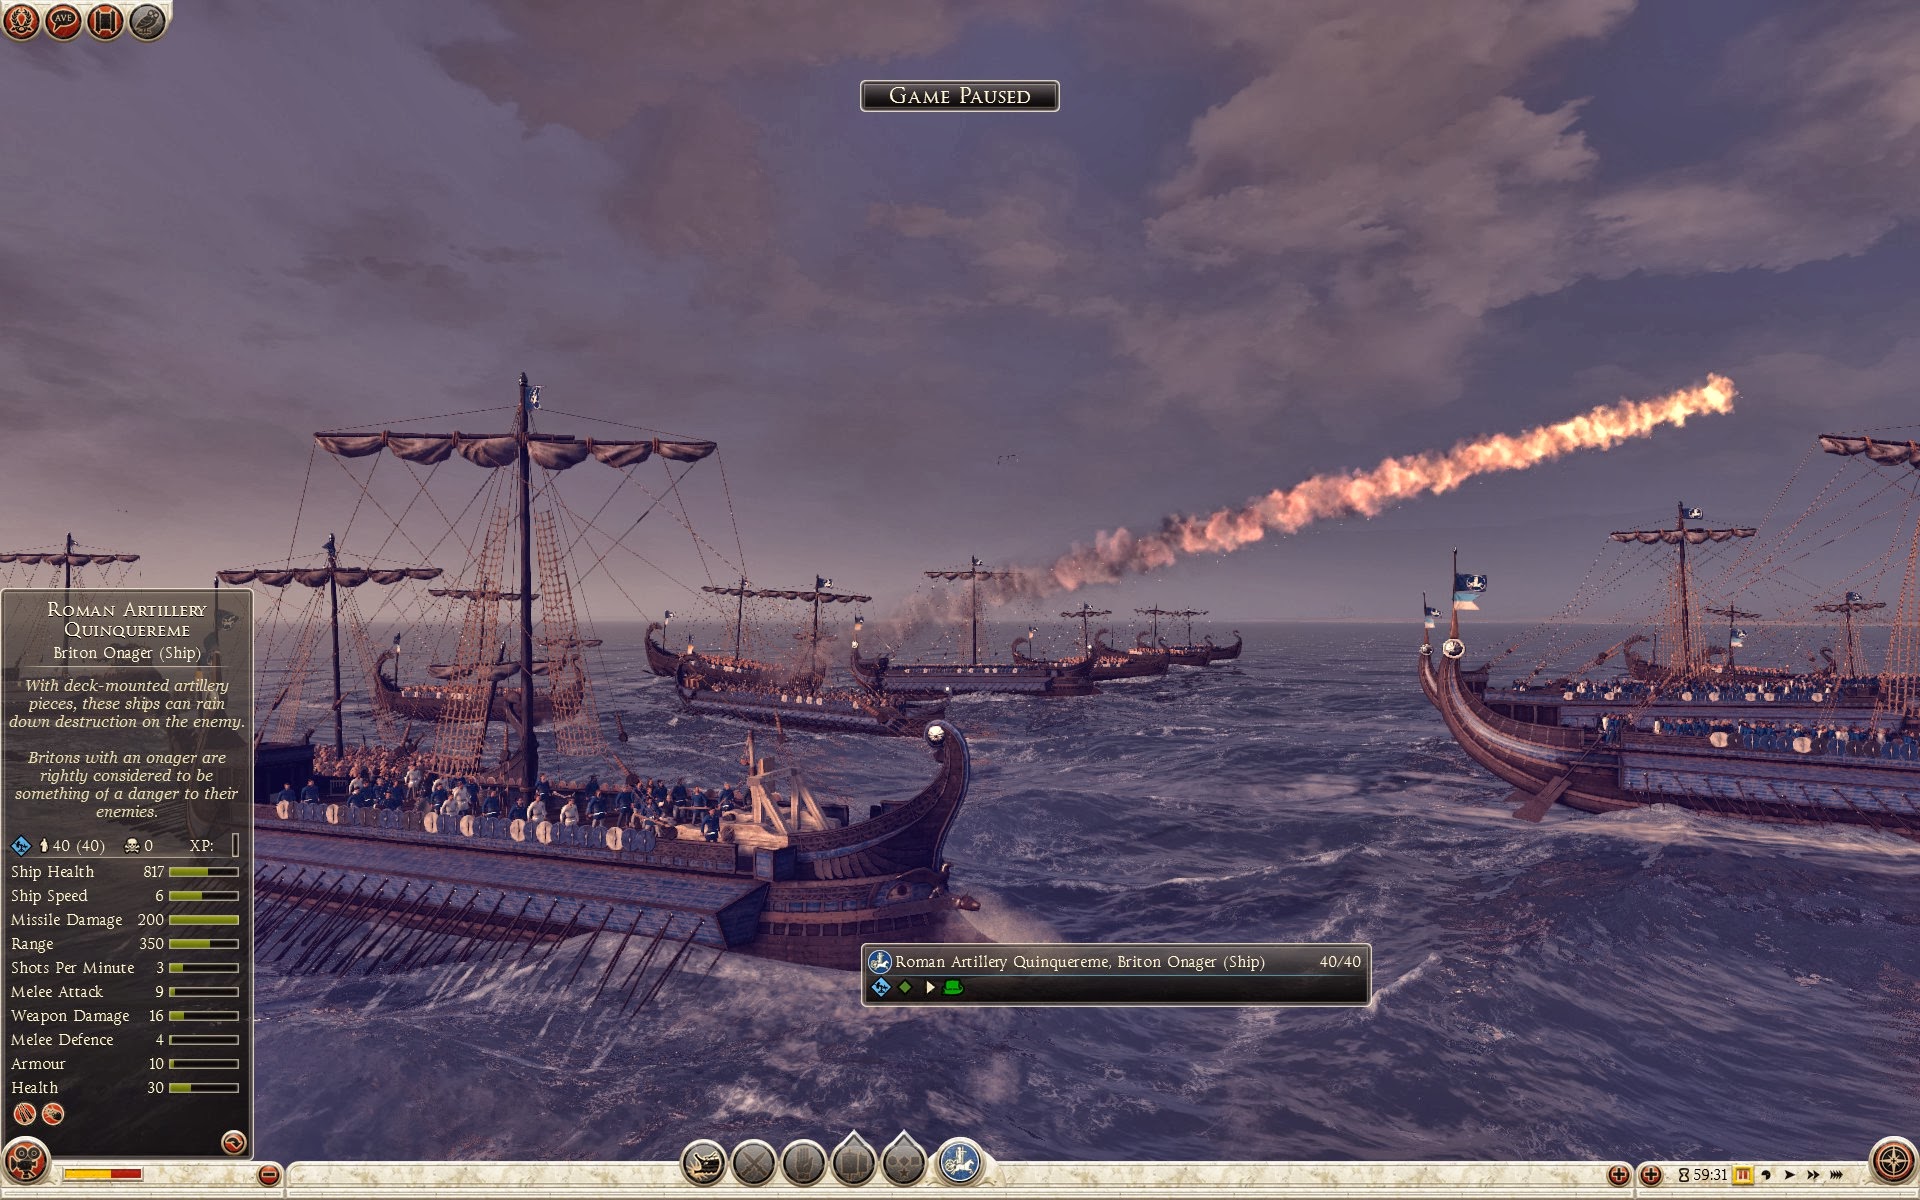 Quinquerreme romano de artillería - Onagro britano (barco)